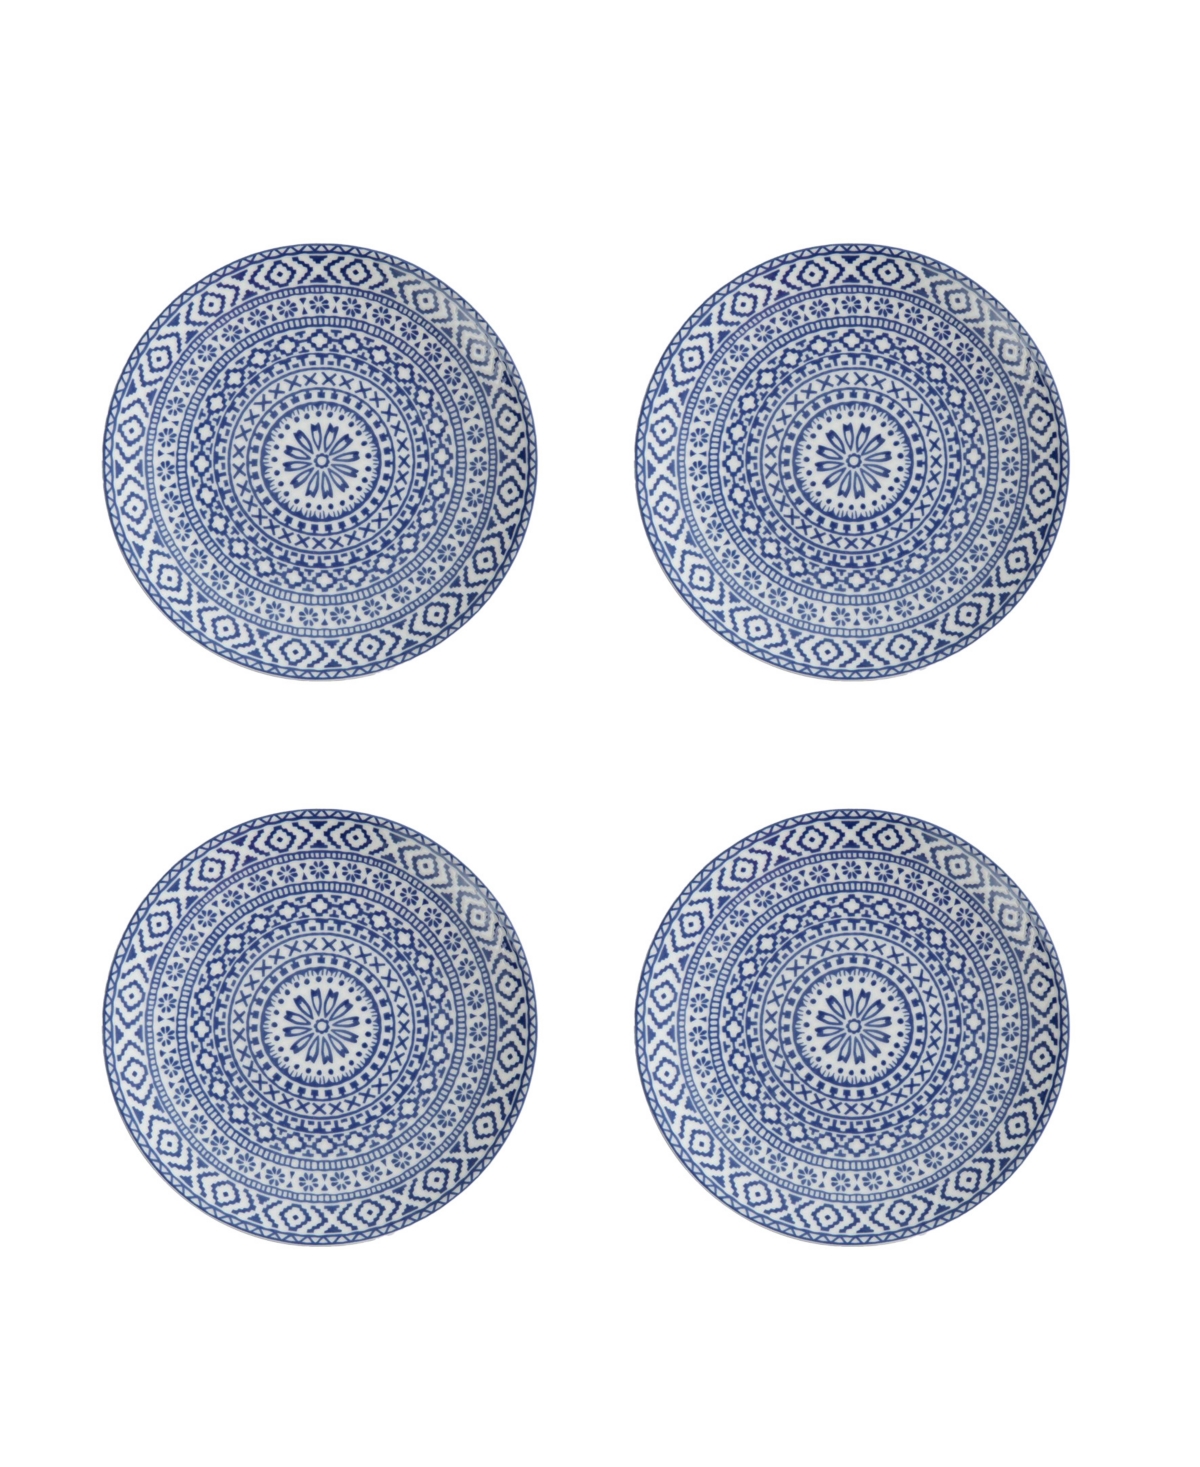 Casablanca Coupe Plates, Set of 4 - Blue